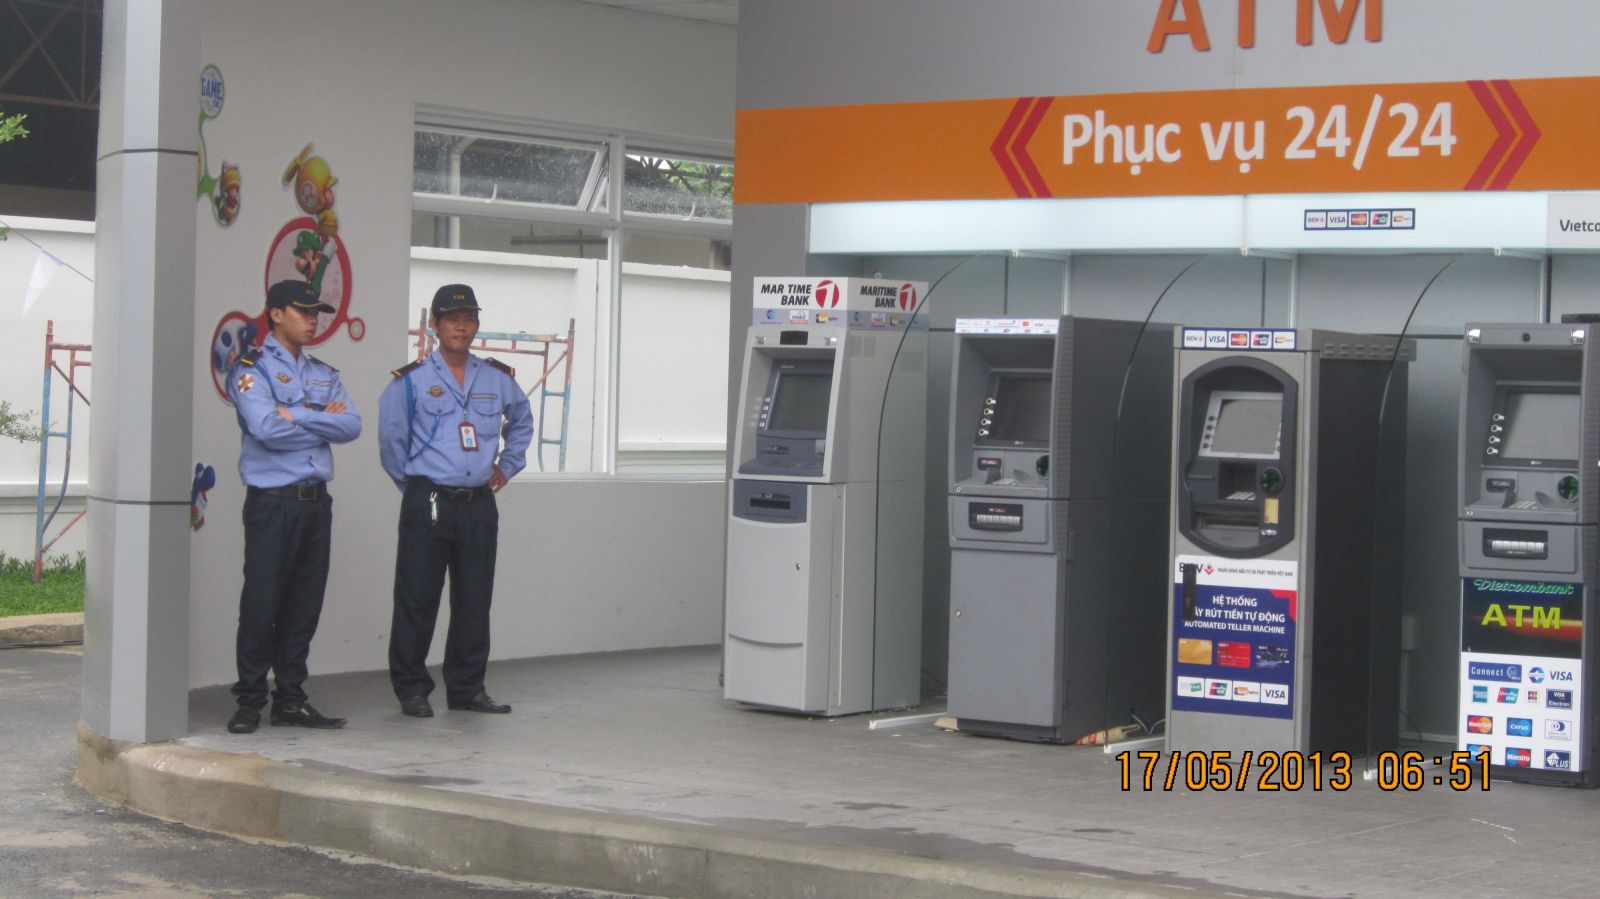 Dịch vụ bảo vệ ATM